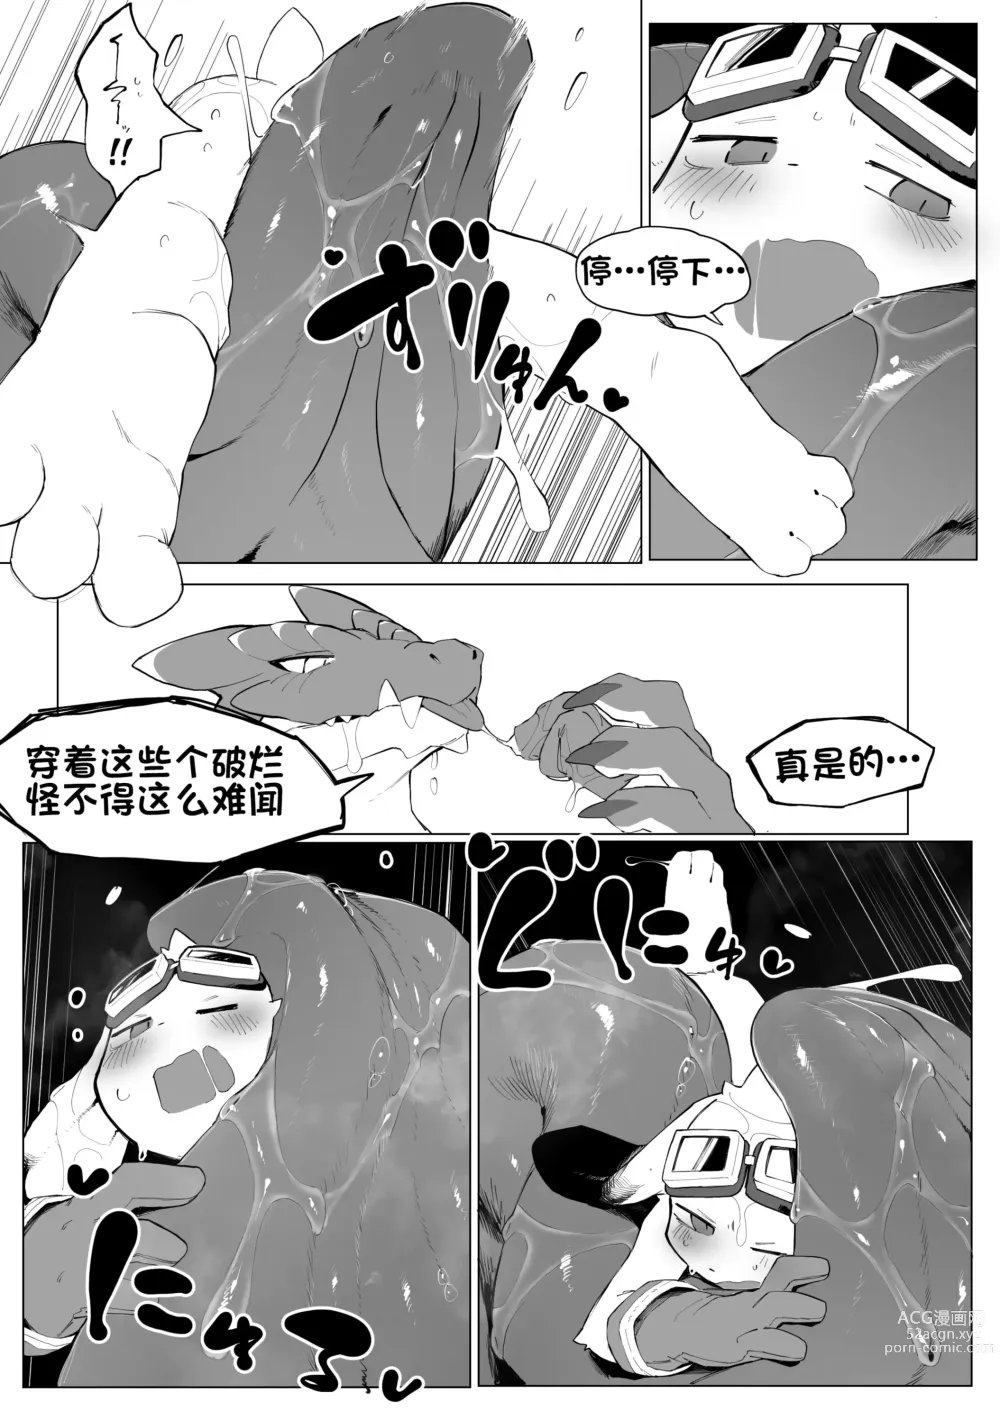 Page 12 of doujinshi 见习兽人冒险家